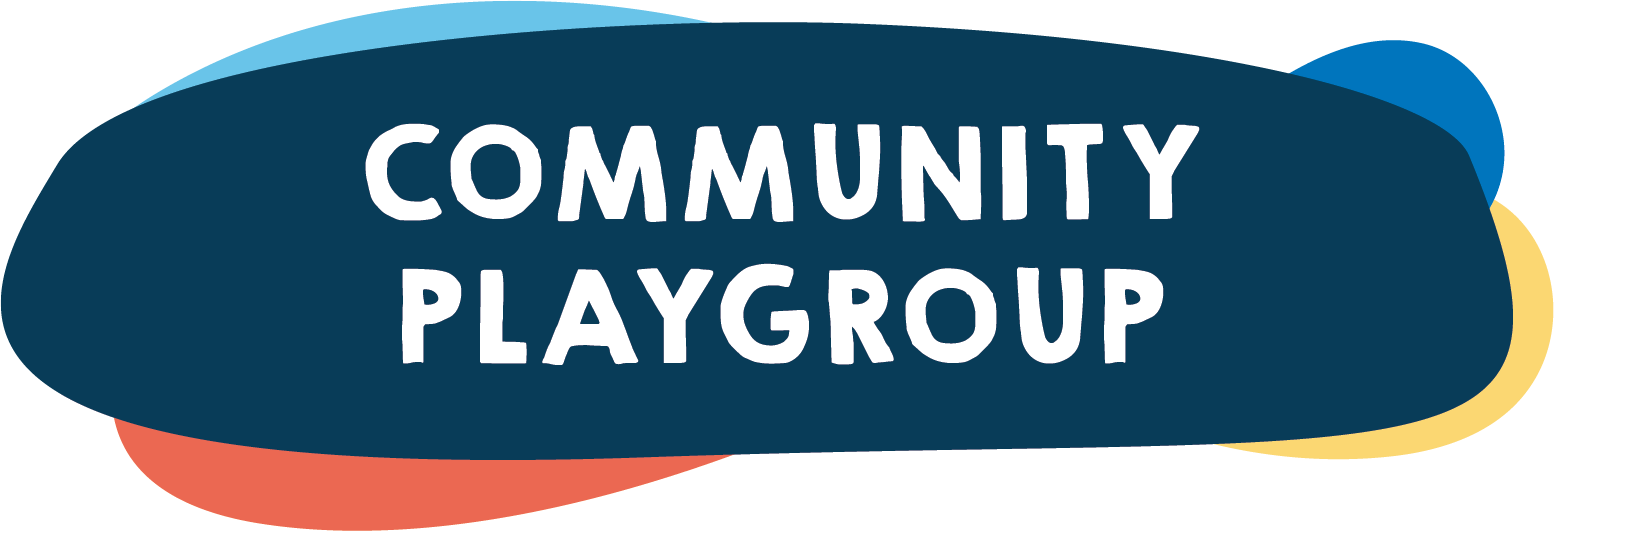 Community Playgroup, community playgroup